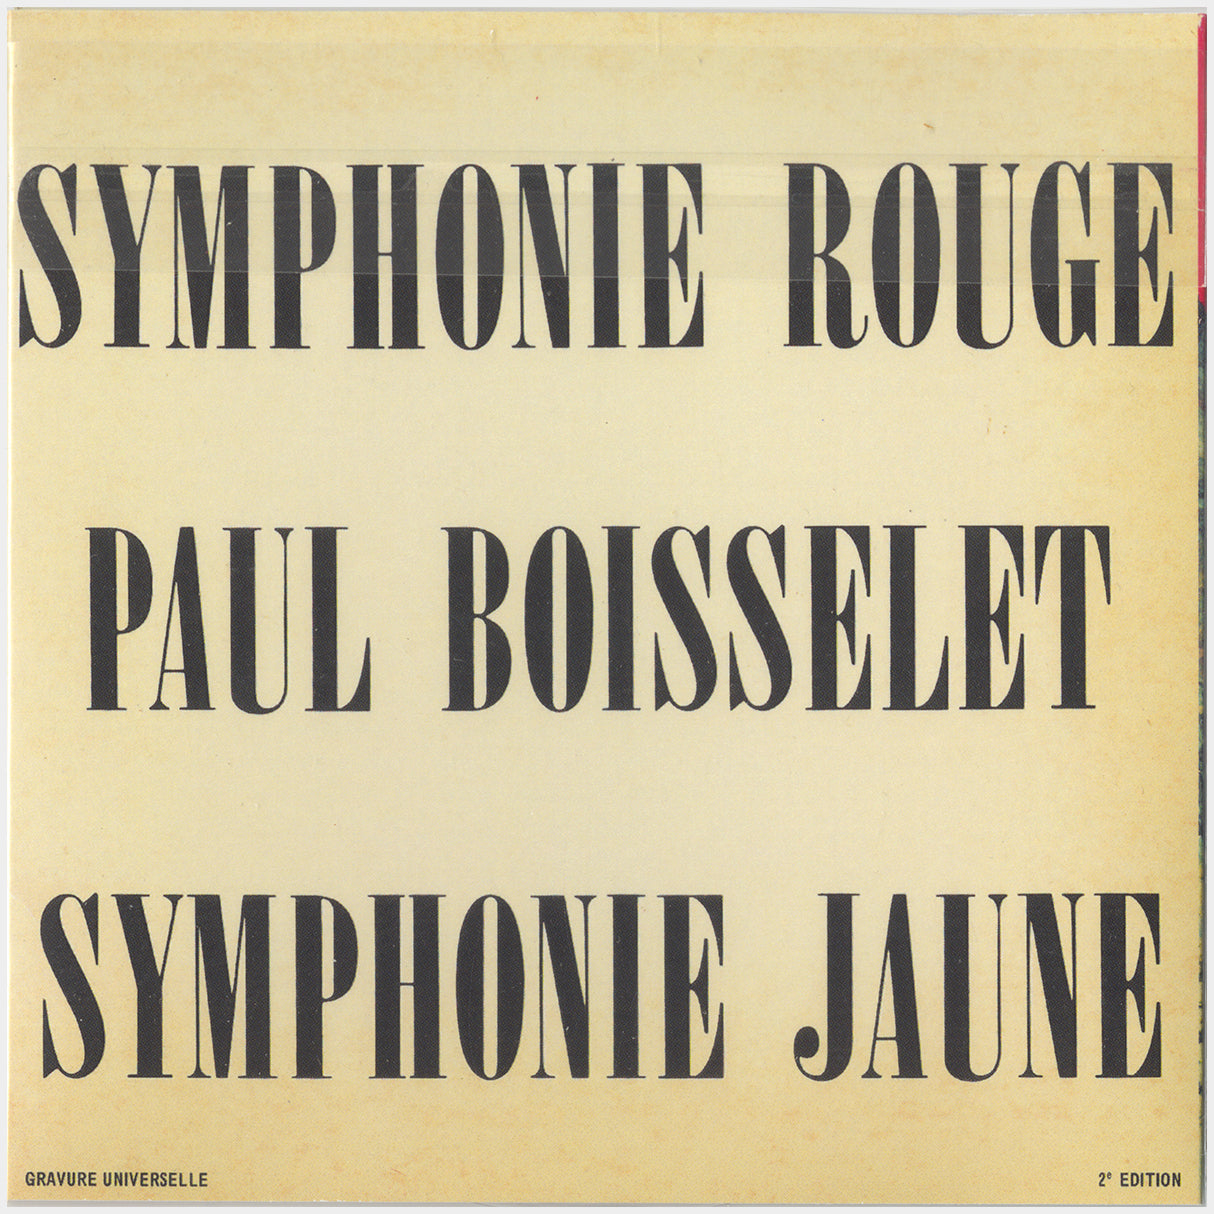 [CP 036-102 CD] Paul Boisselet; Le Robot, Symphonie Rouge, Symphonie Jaune